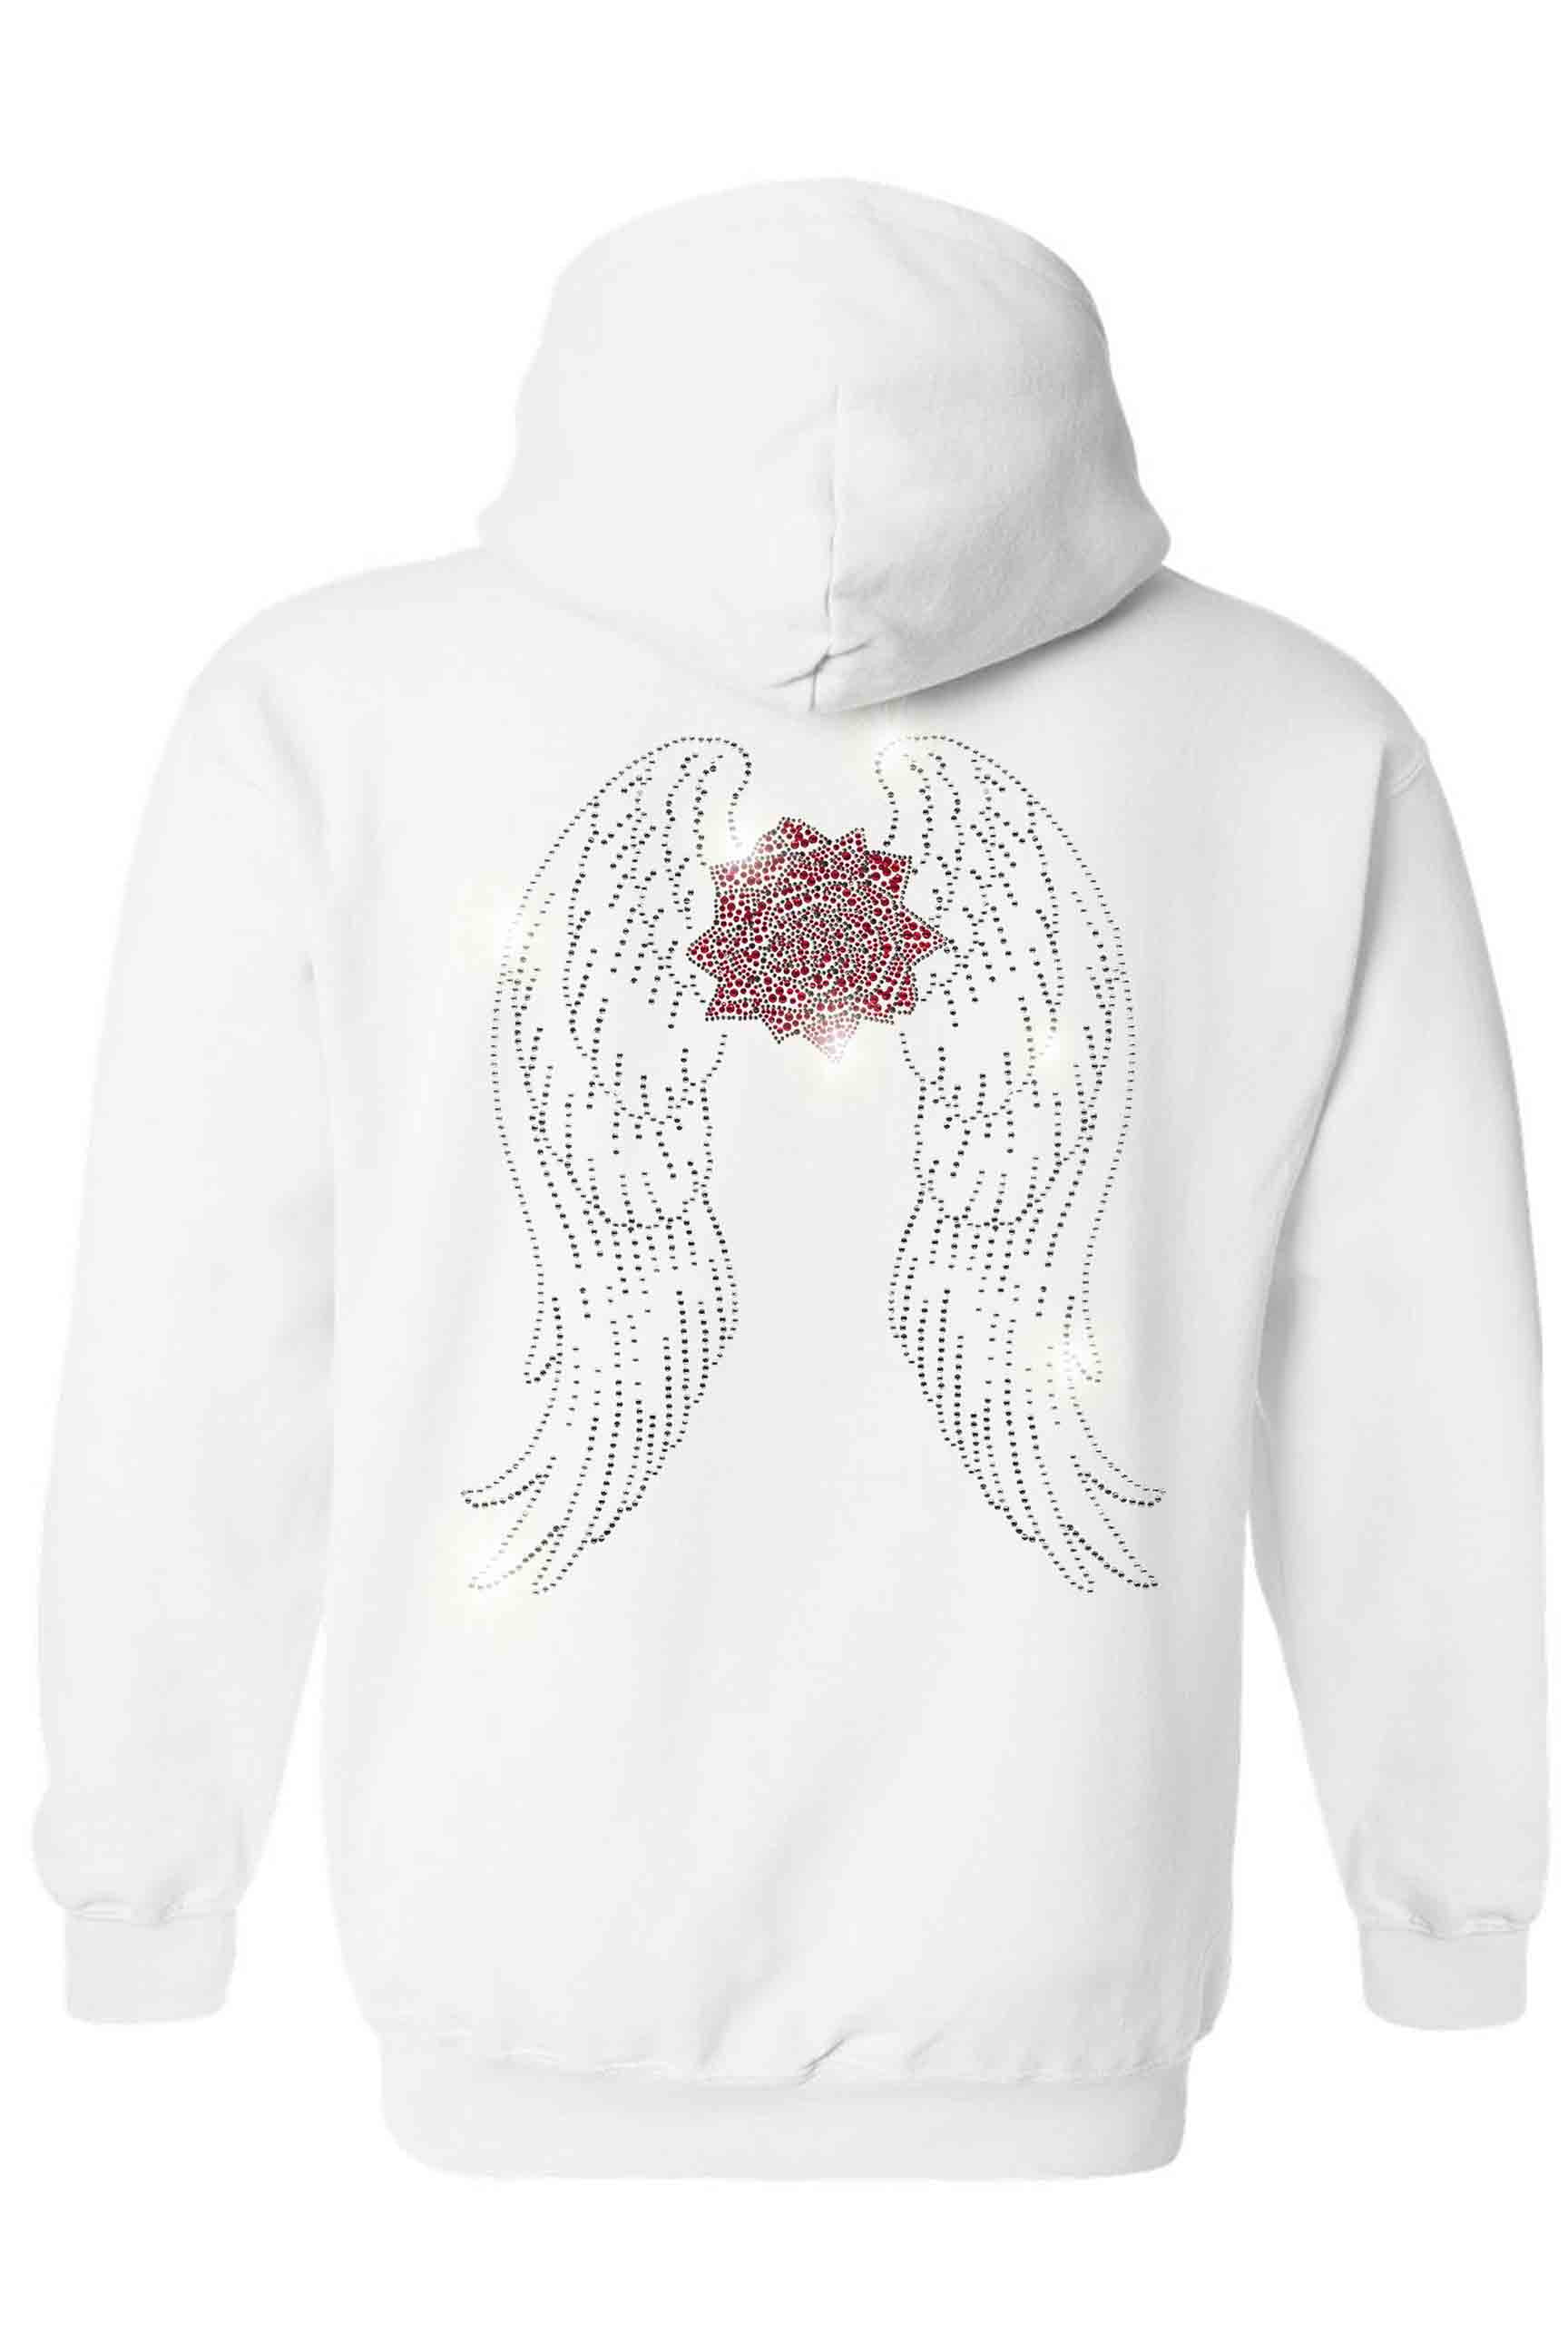 angel wing hoodies with rhinestones